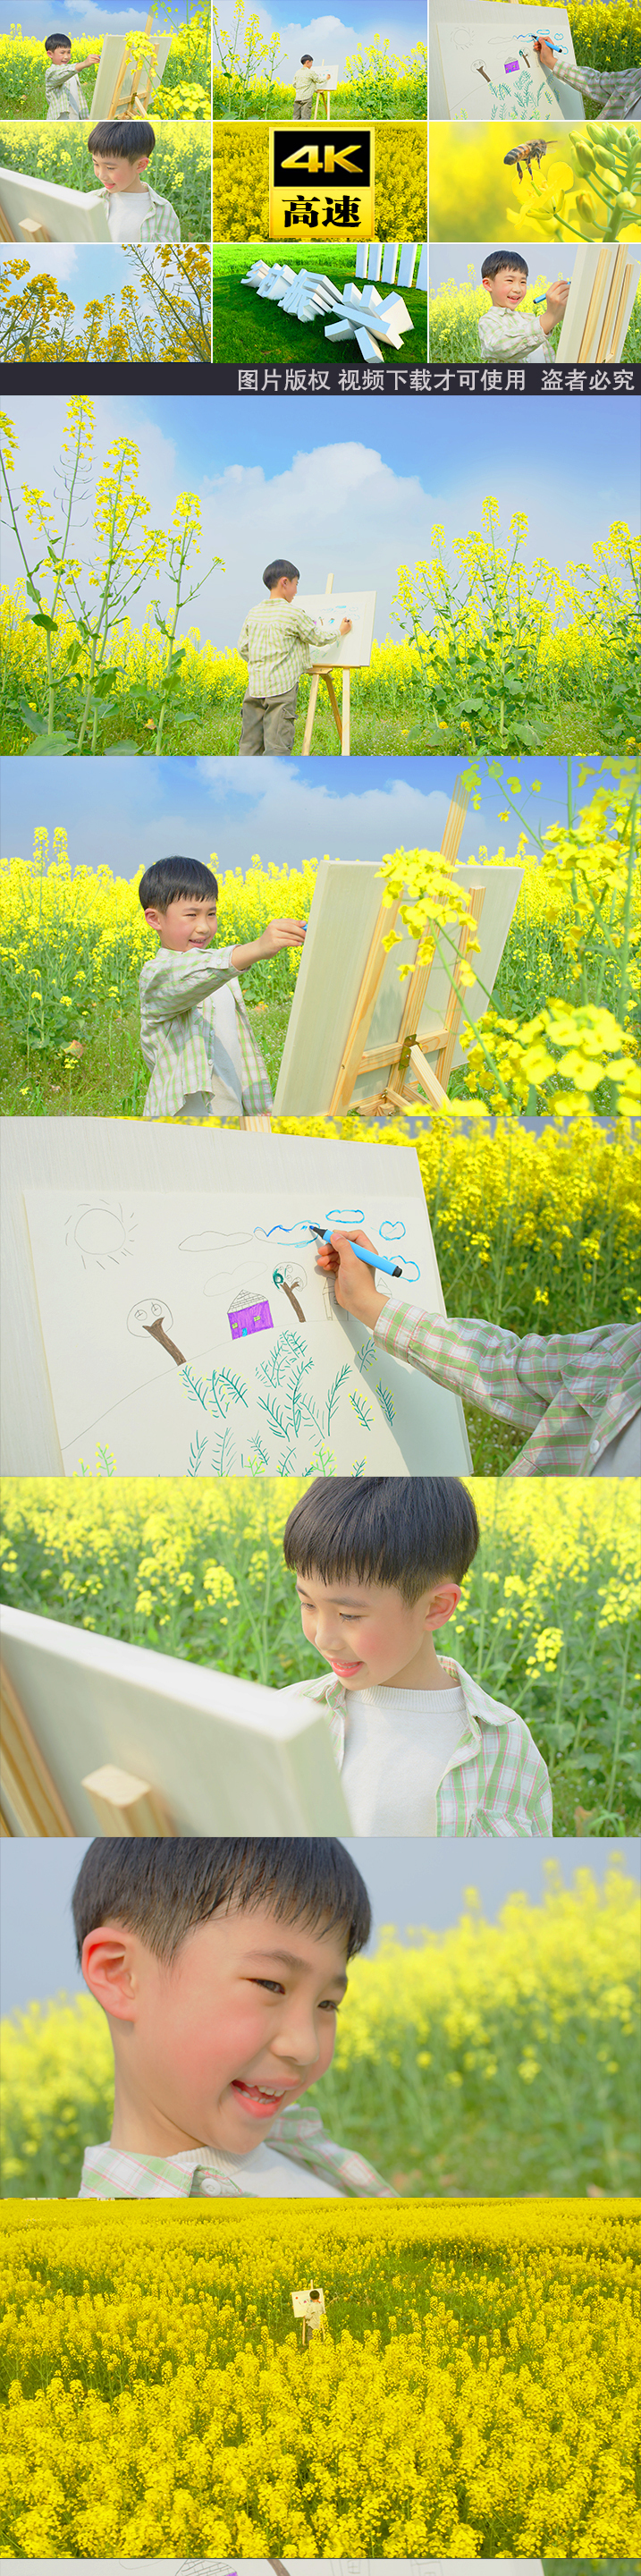 油菜花小孩孩子画画写生画家儿童美好绘画画